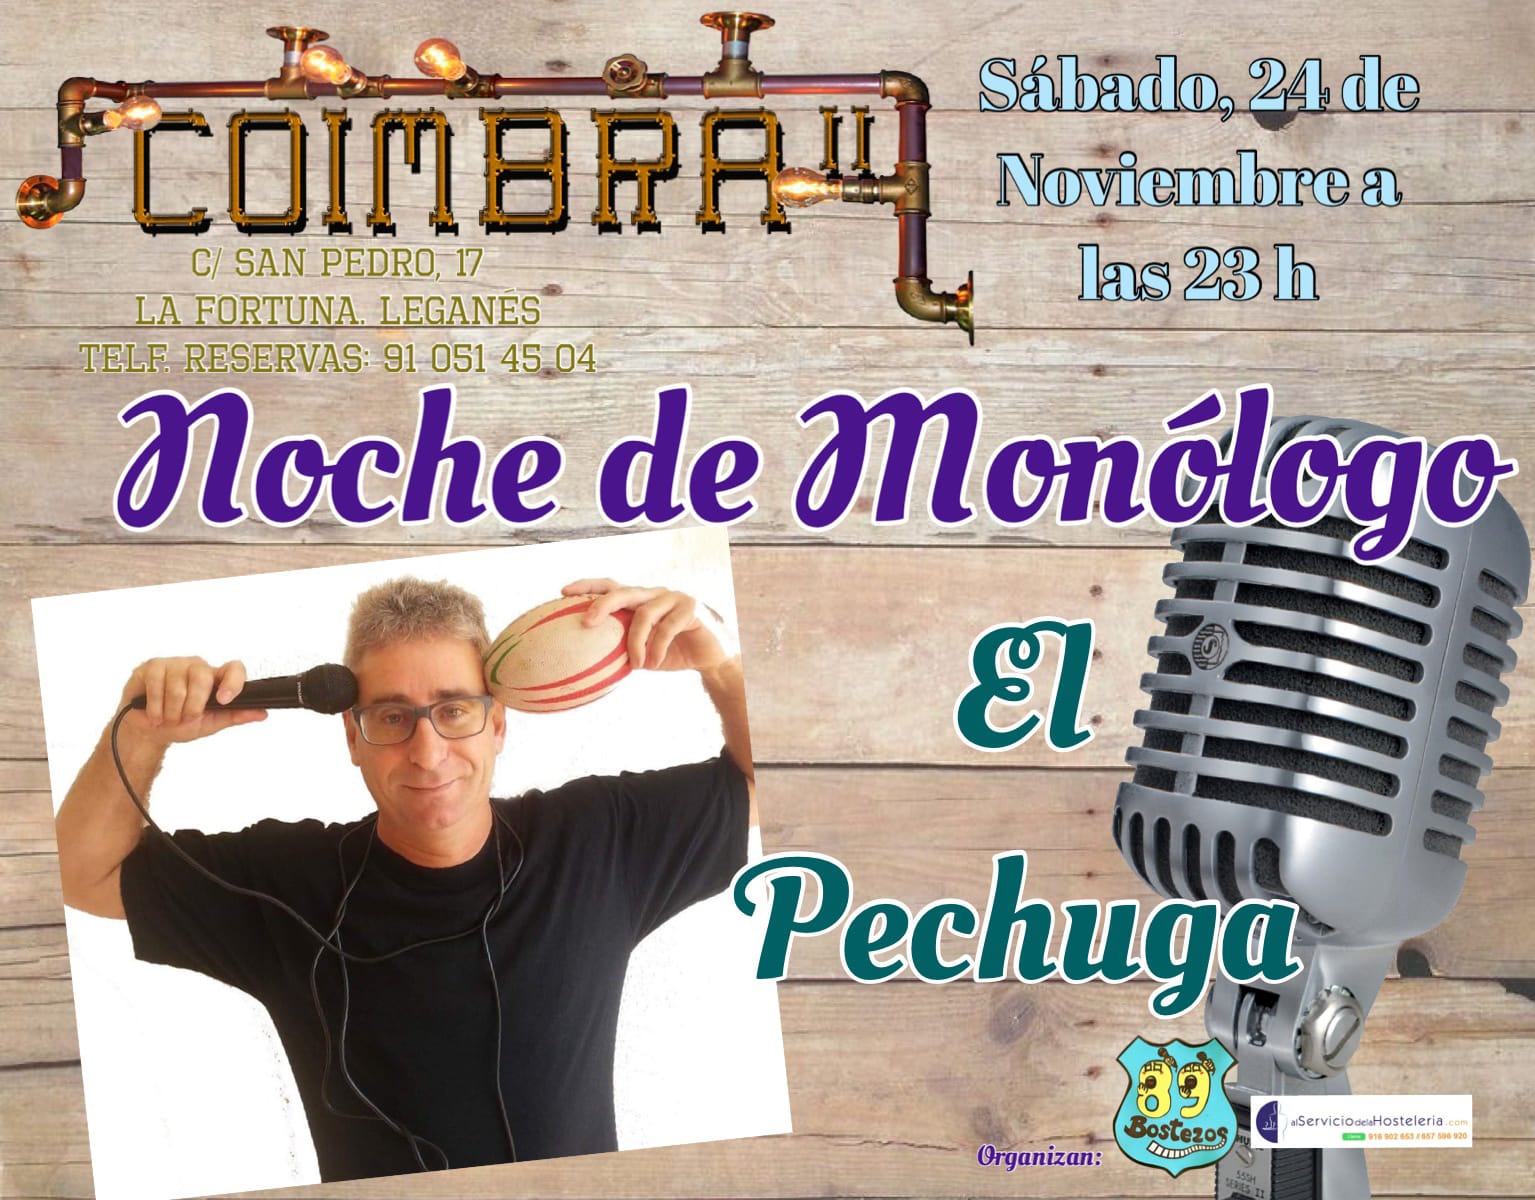 Noche de monologos con El Pechuga en el Coimbra